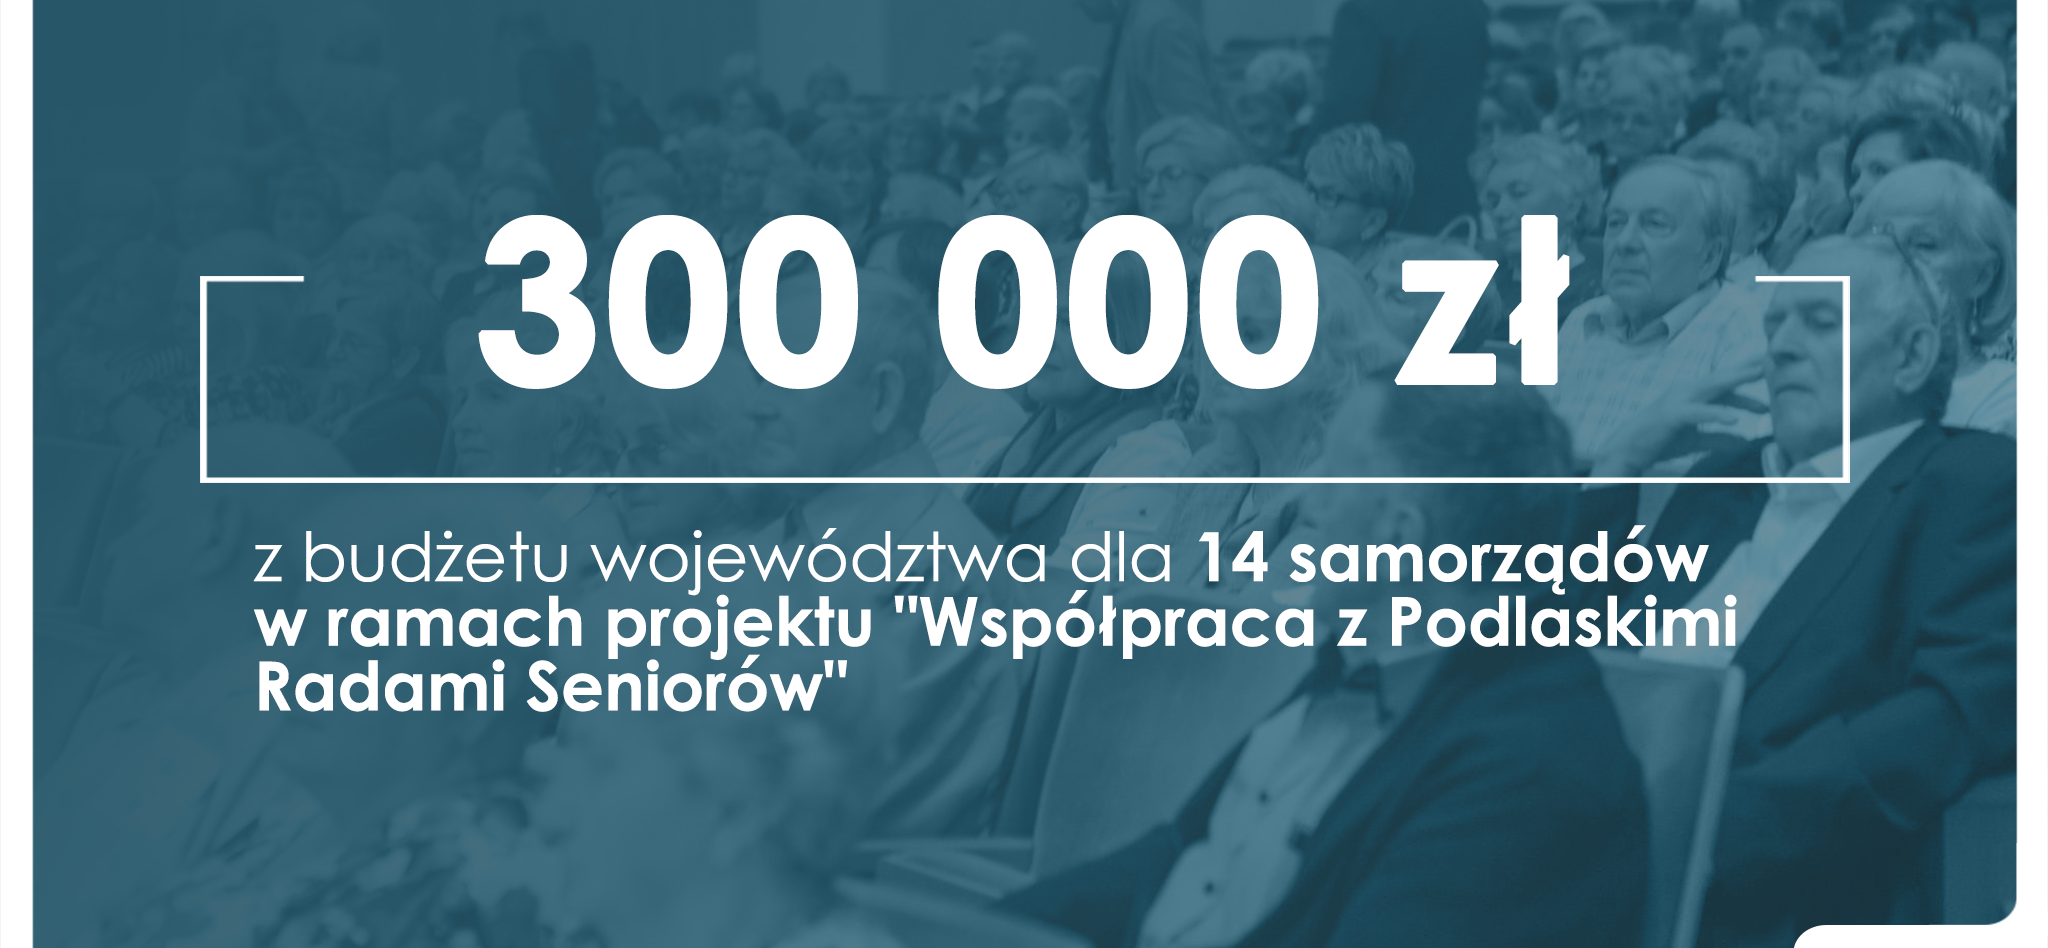 Informacja o 300 tys. zł dotacji na rady seniorów.